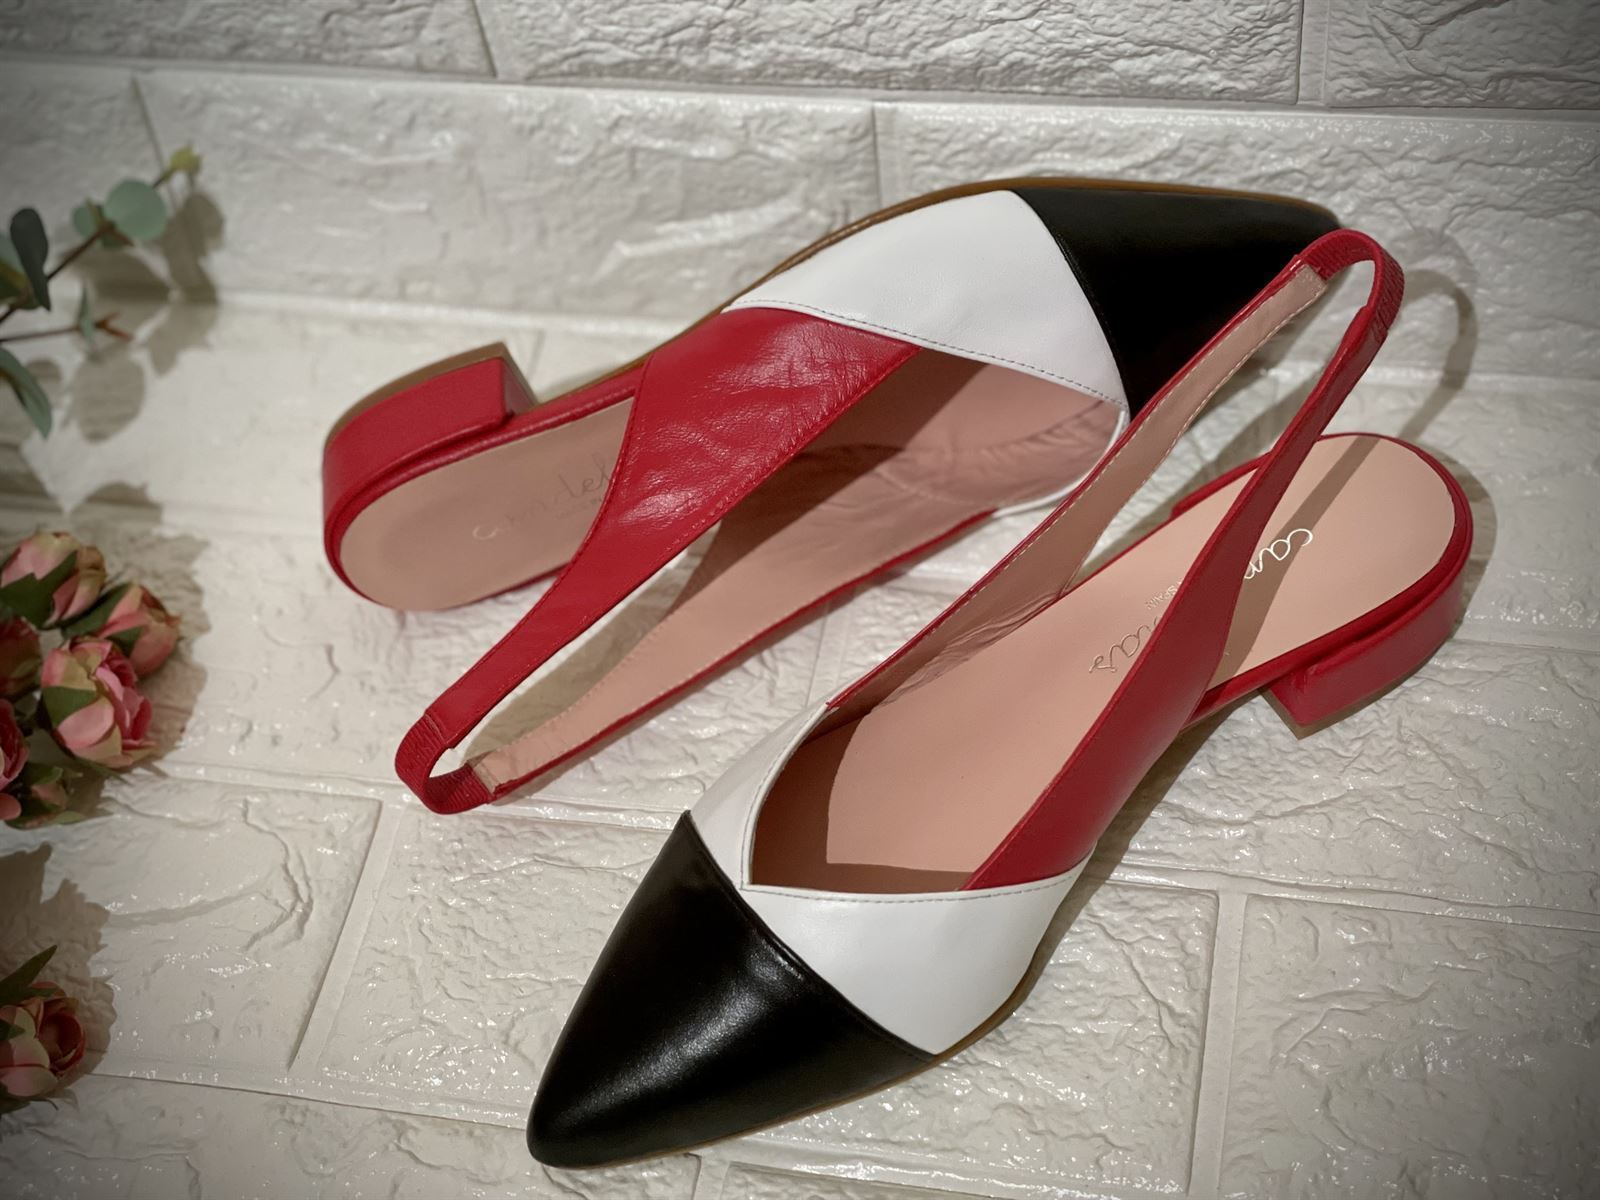 Zapato bailarina Candelitas tricolor rojos - Imagen 3